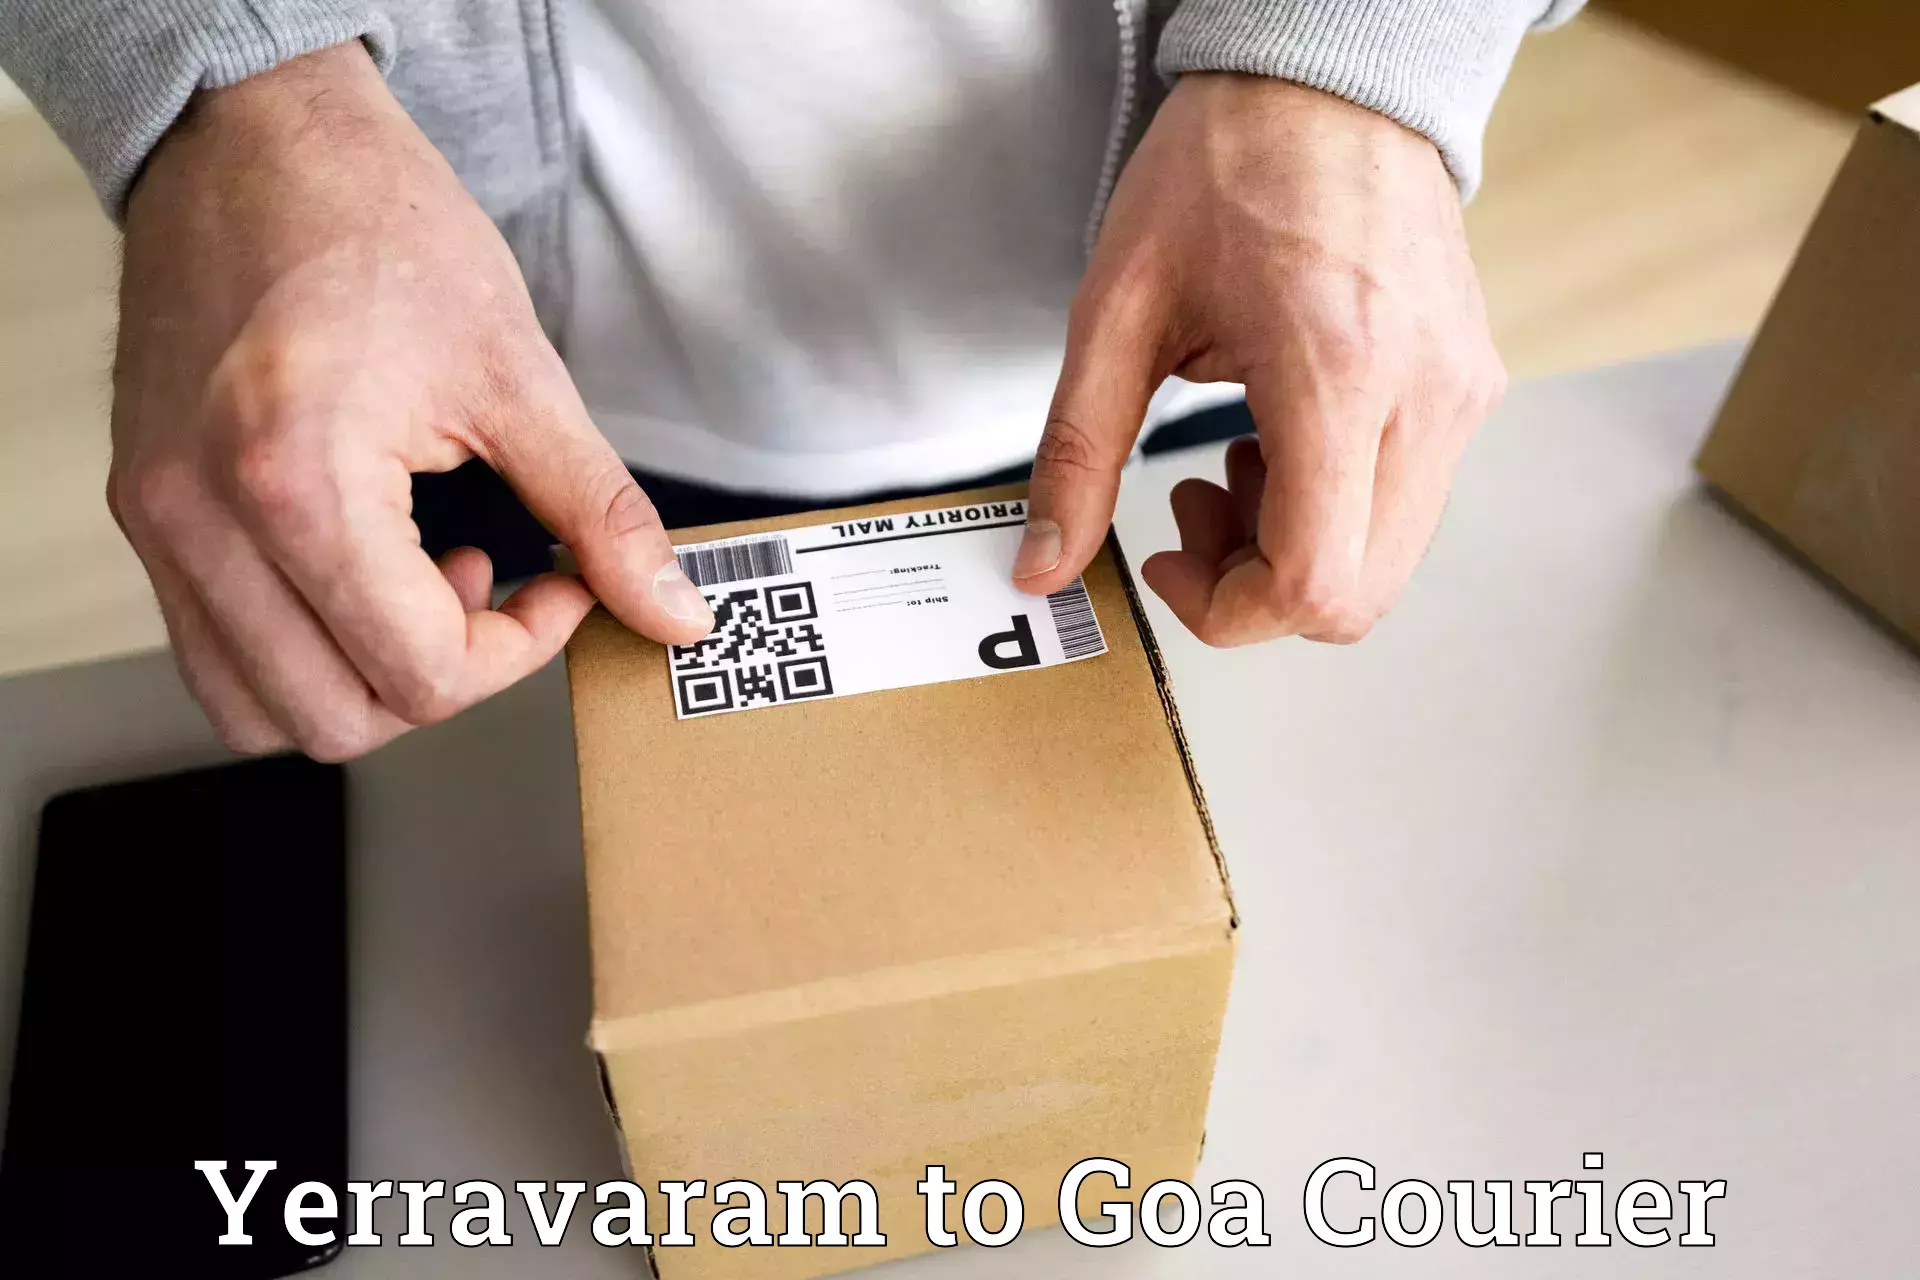 Global courier networks Yerravaram to Vasco da Gama